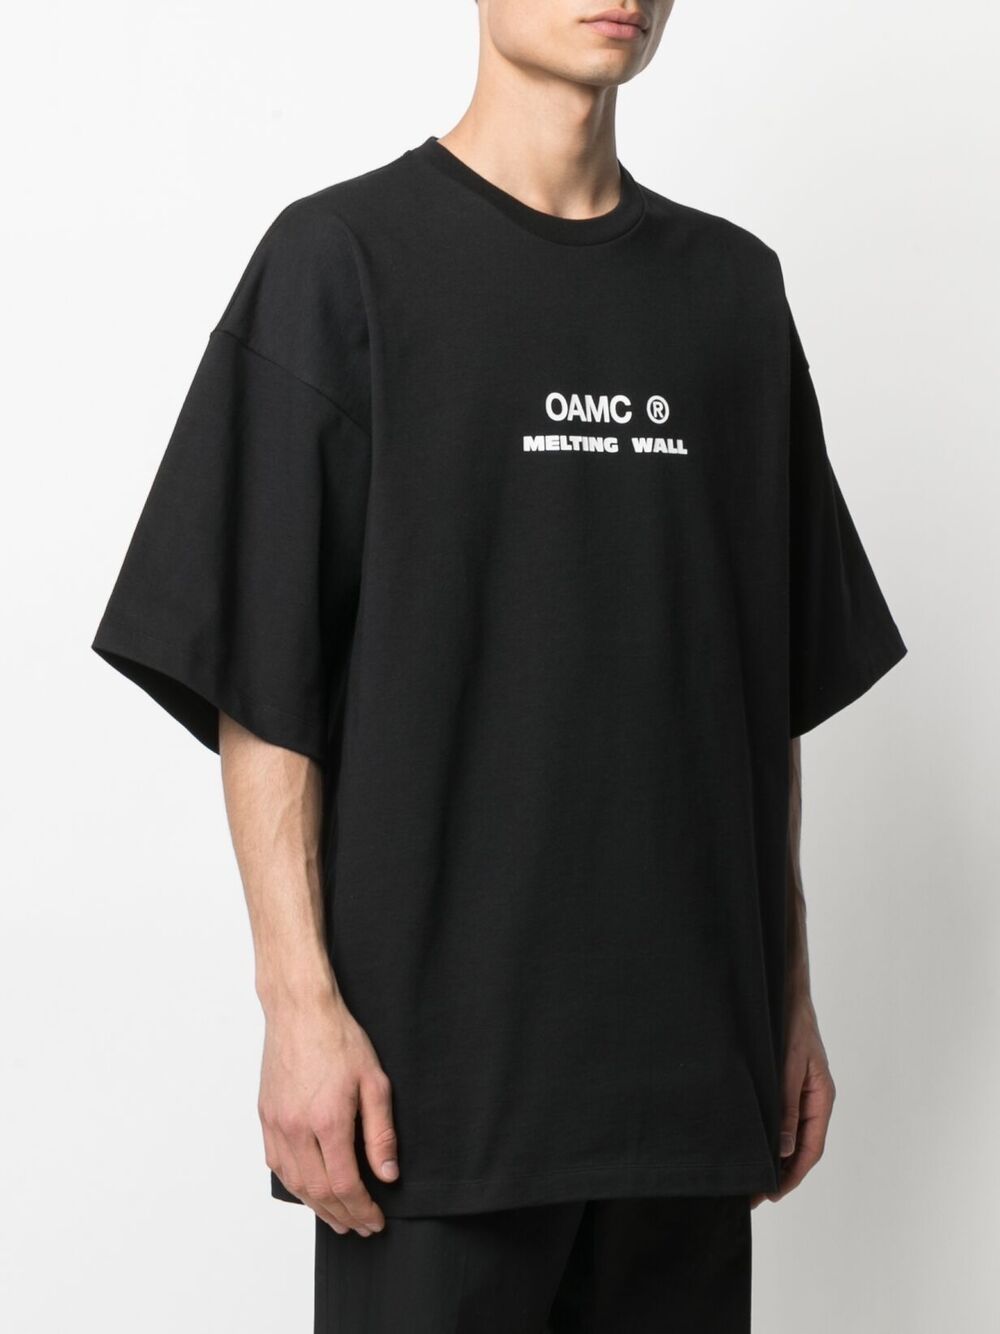 фото Oamc футболка melting wall с логотипом